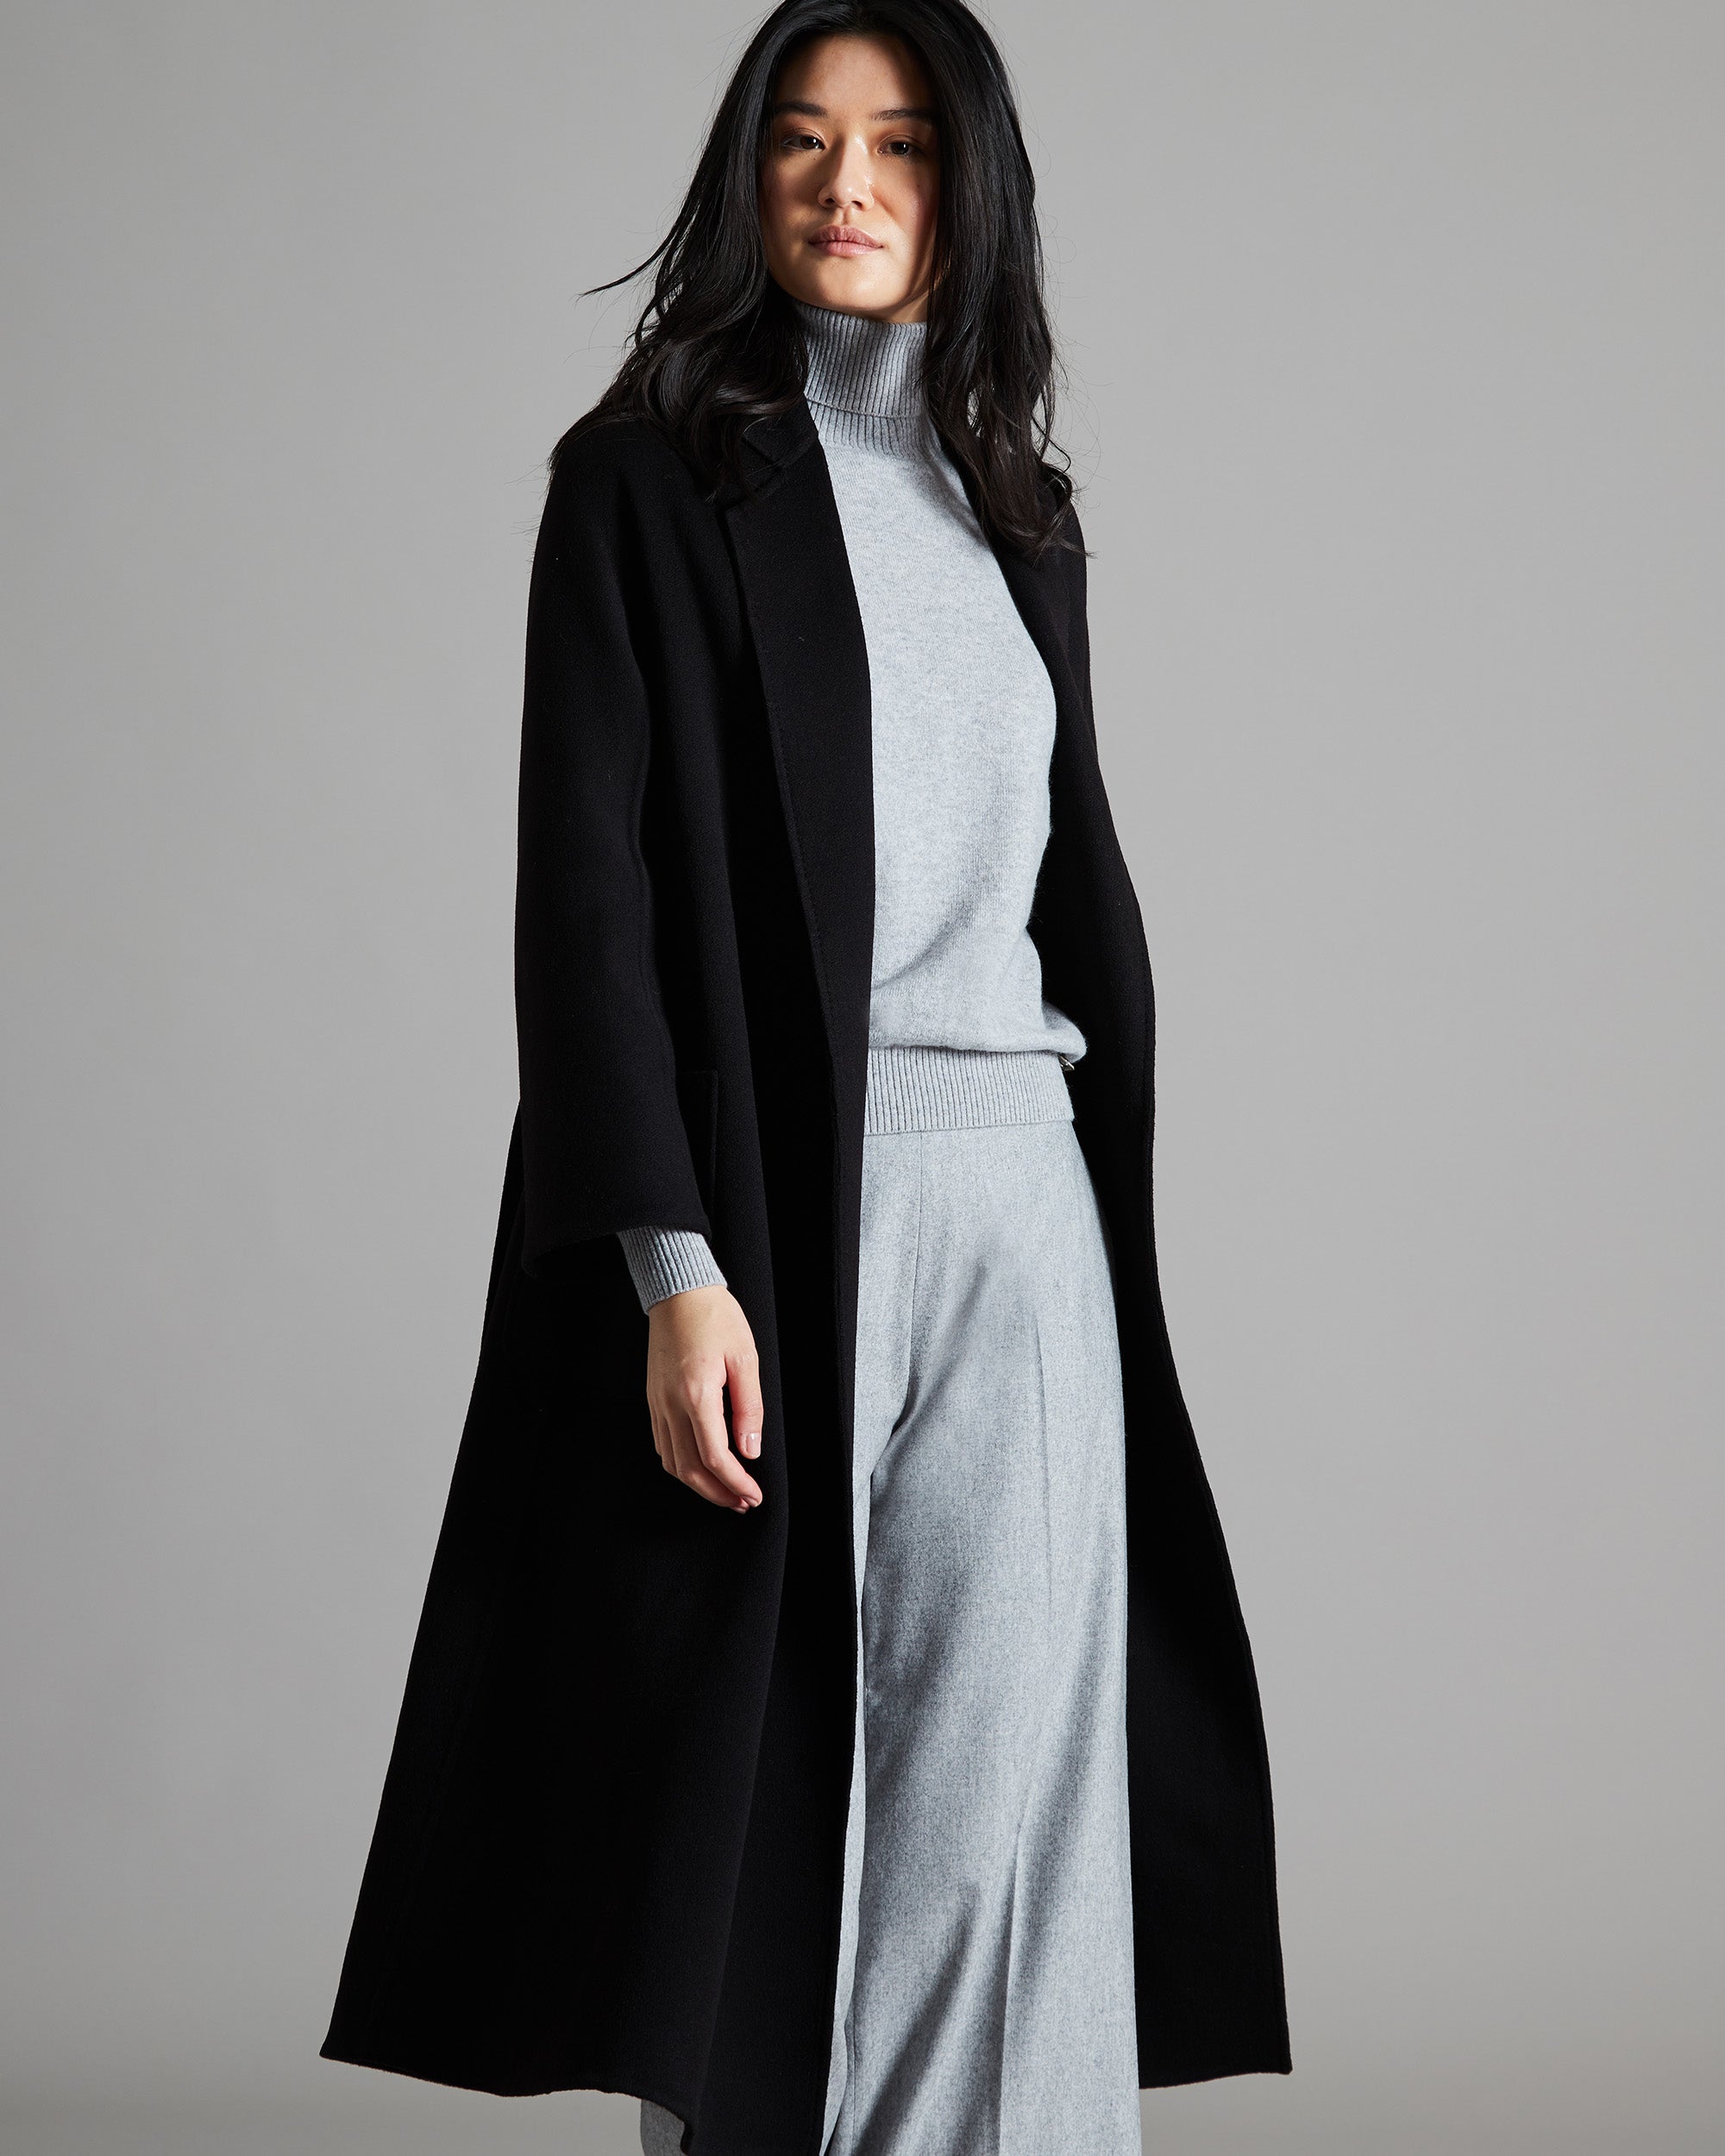 Cashmere long black coat